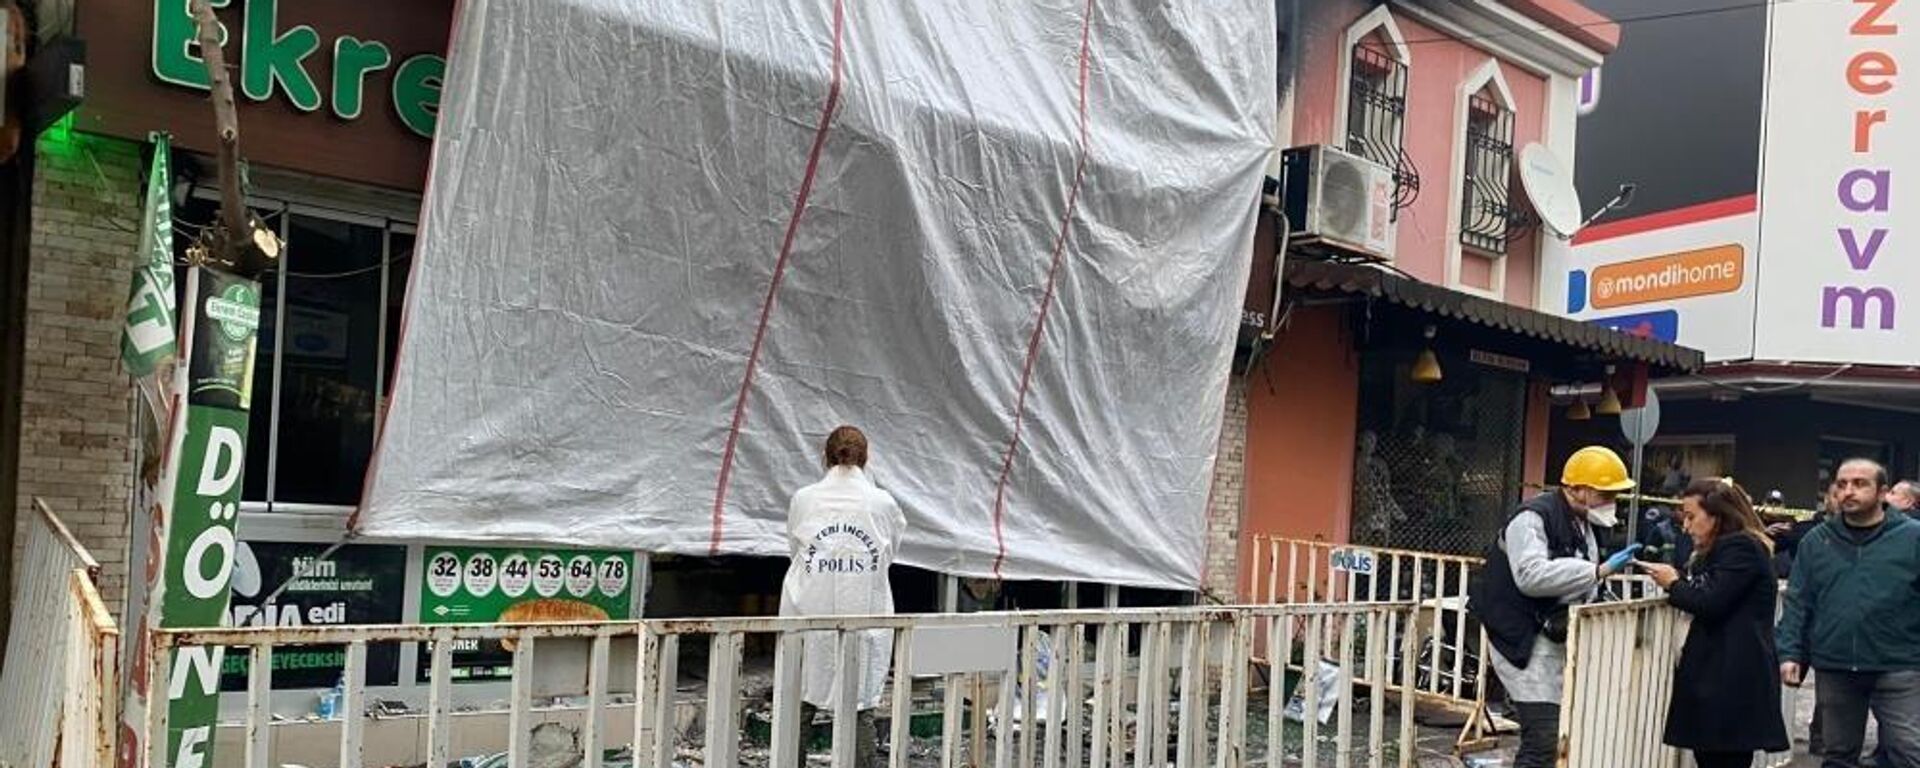 Aydın Nazilli'deki bir restoranda 7 kişinin ölümü 5 kişinin yaralandığı patlamayla ilgili bir şüpheli daha tutuklandı. Soruşturma kapsamında tutuklanan şüpheli sayısı 4'e yükseldi. - Sputnik Türkiye, 1920, 05.01.2023